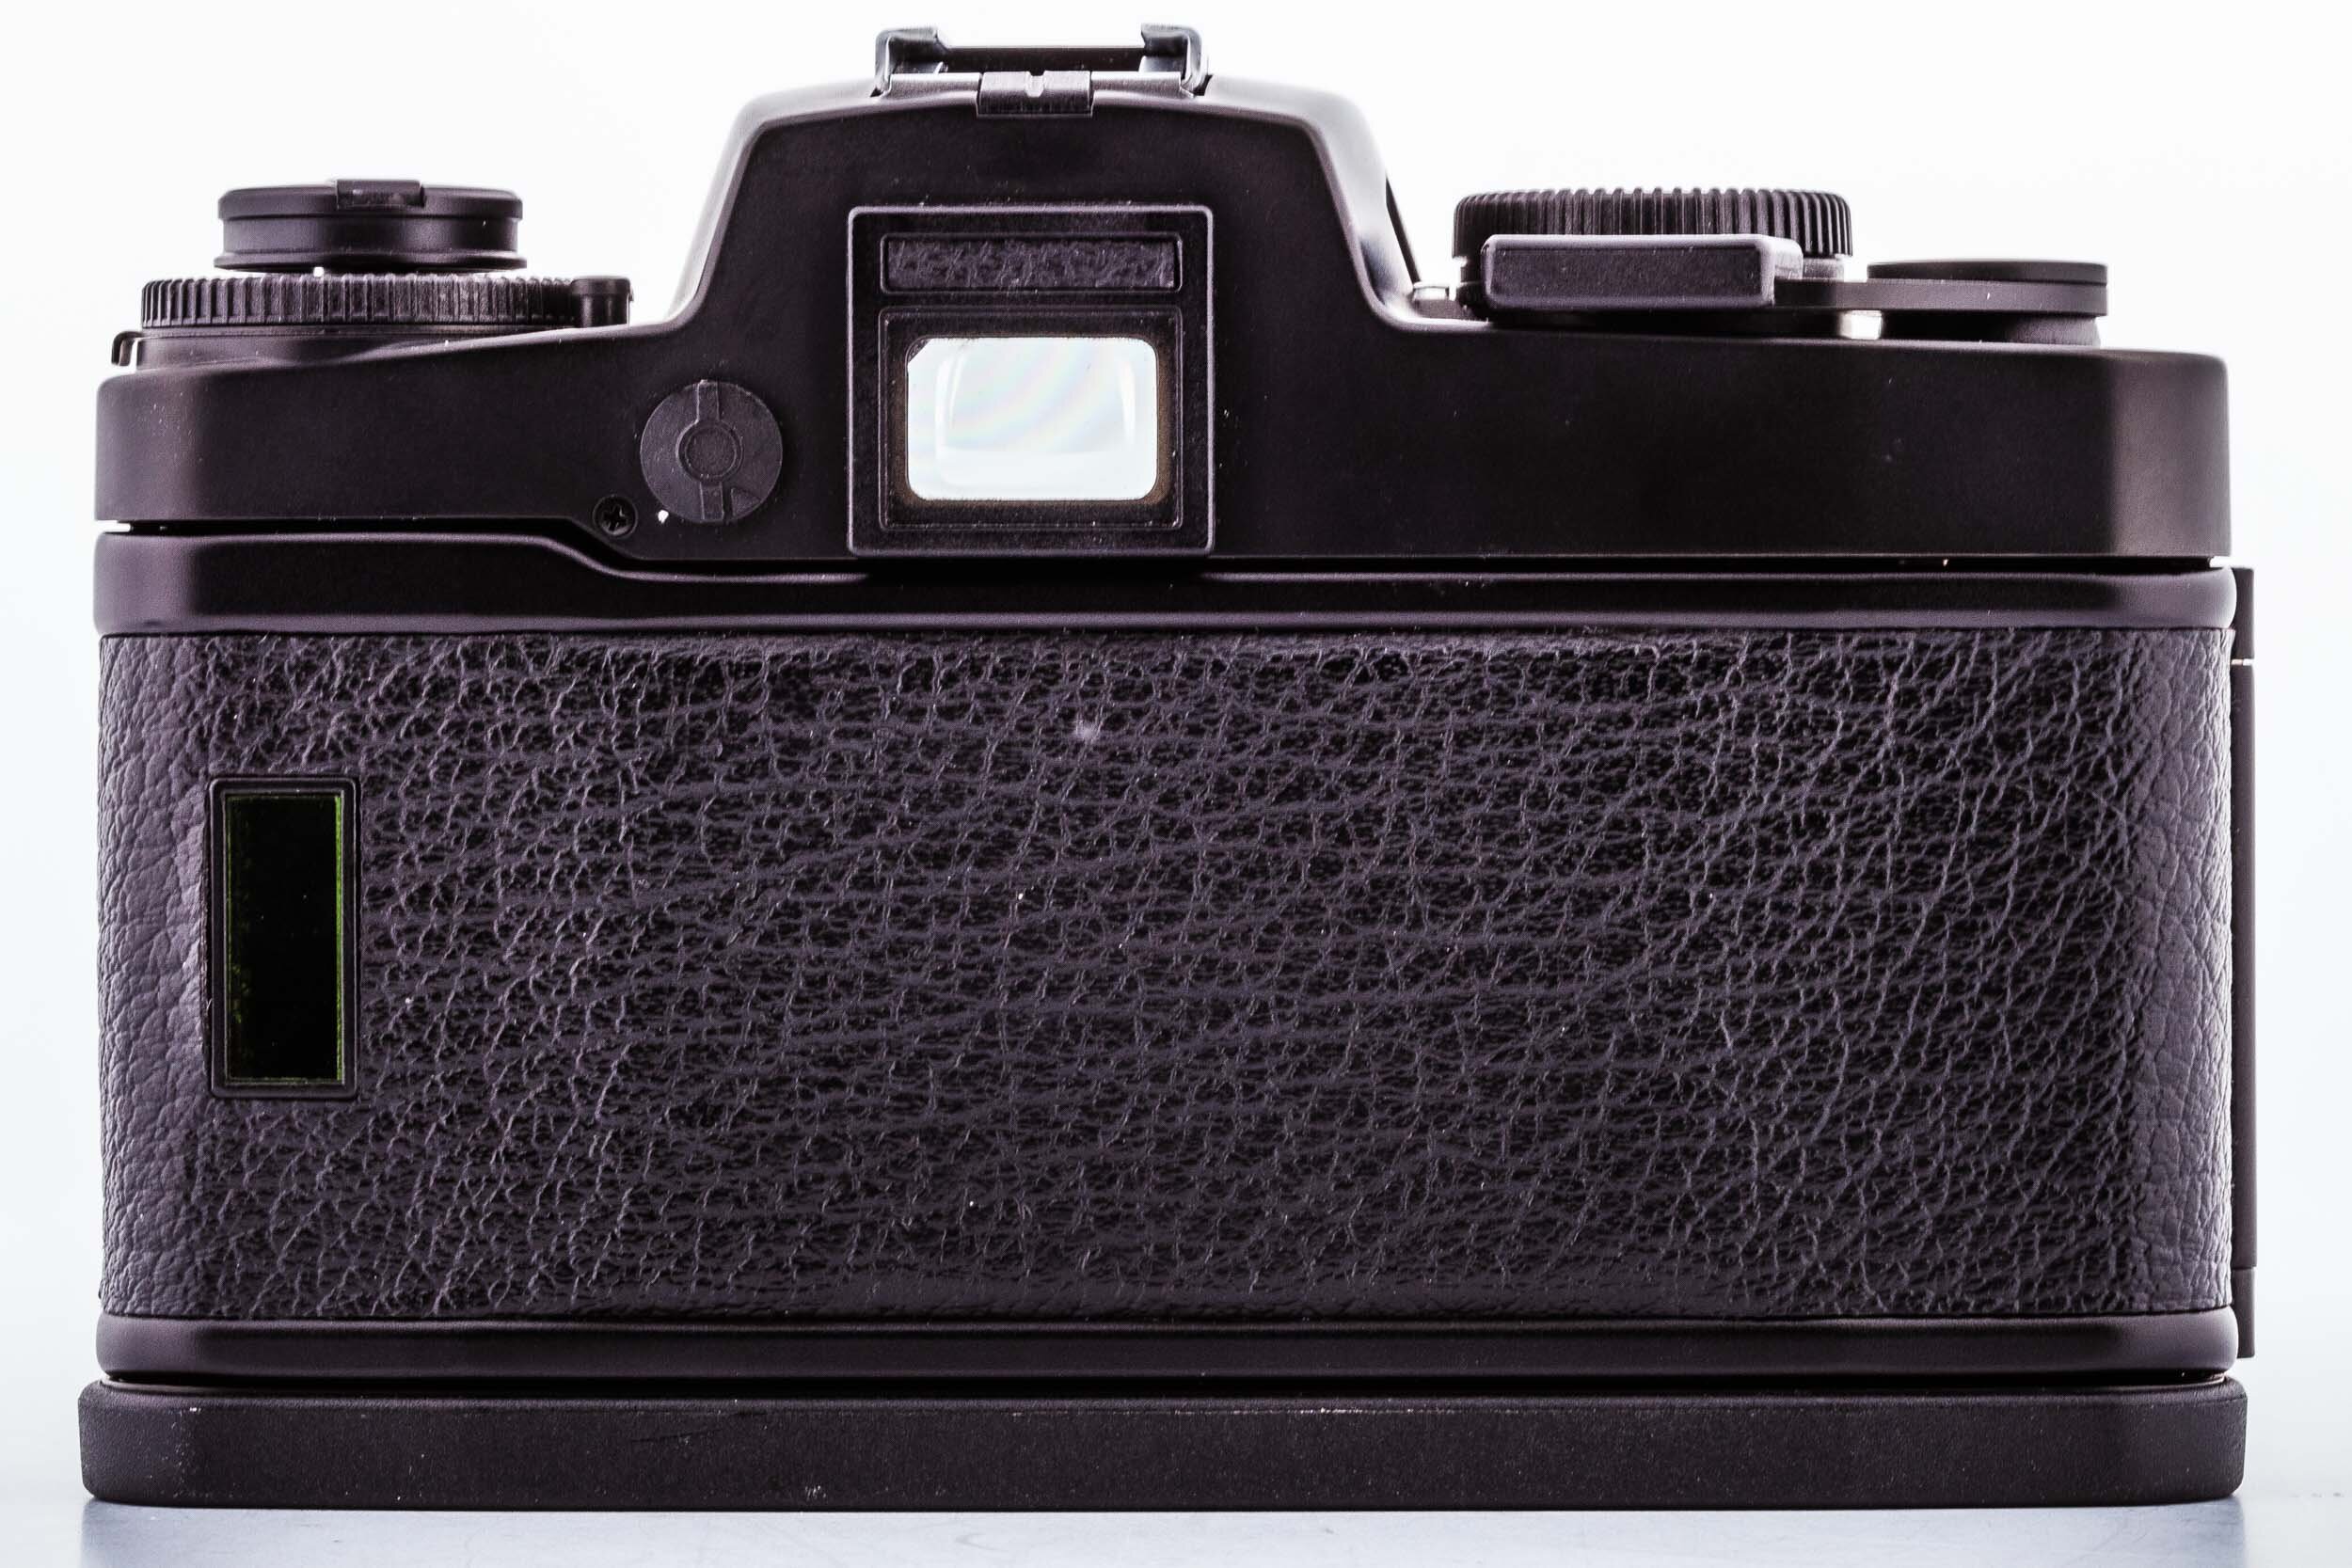 Leitz Leica R4 Body